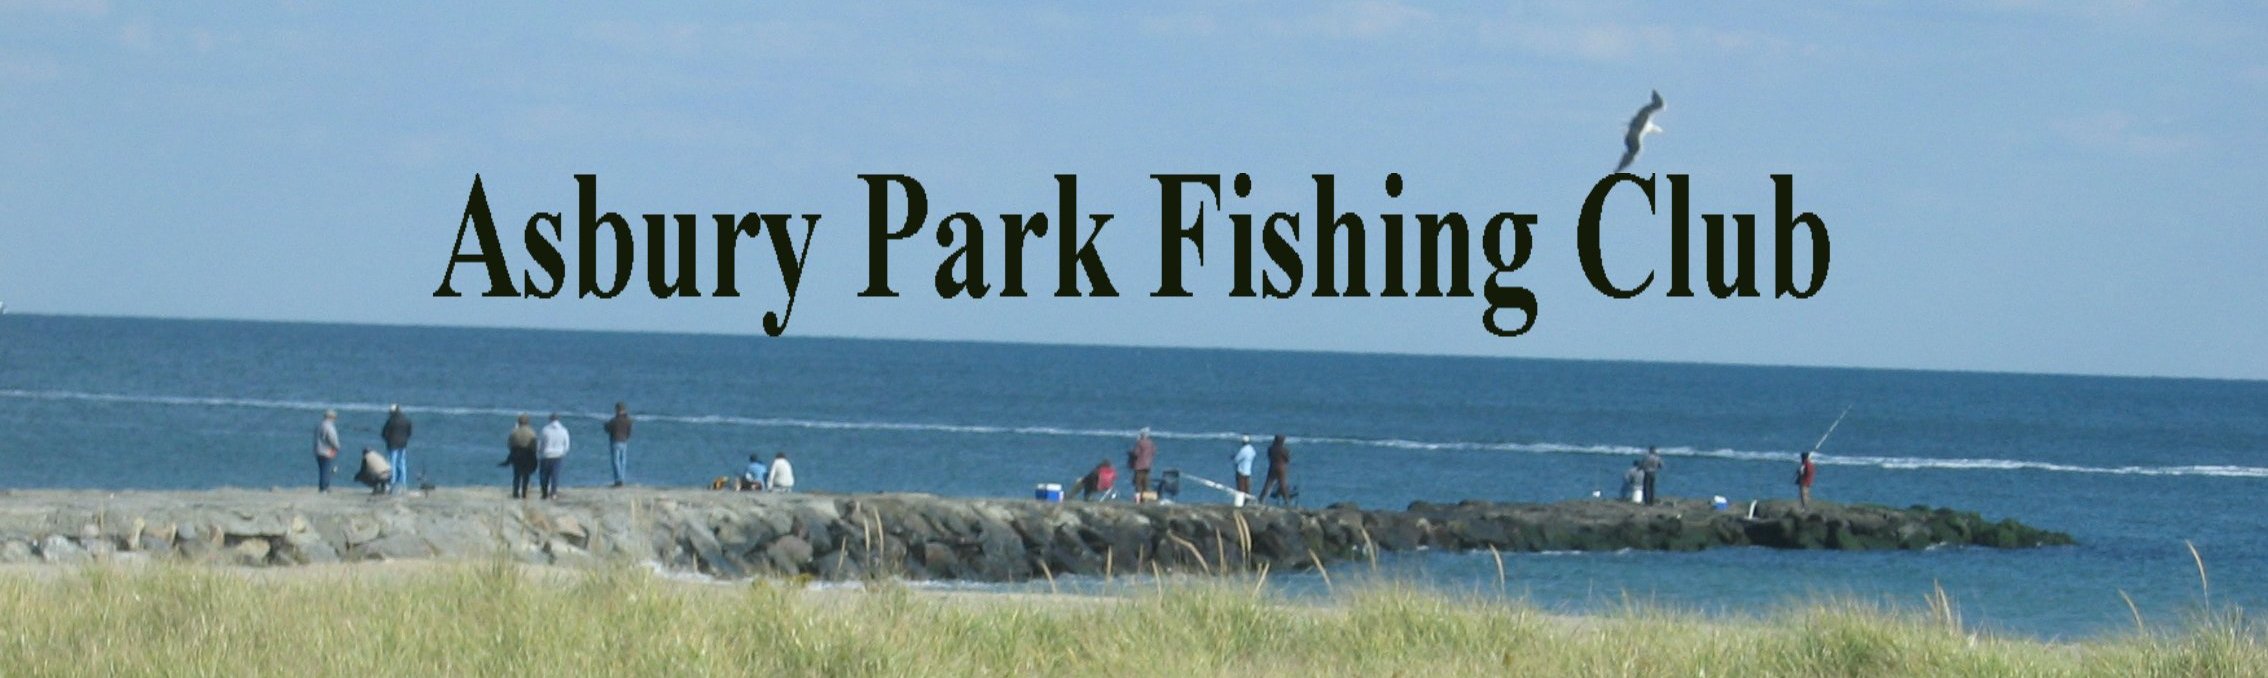 Asbury Park Fishing Club's Web Page